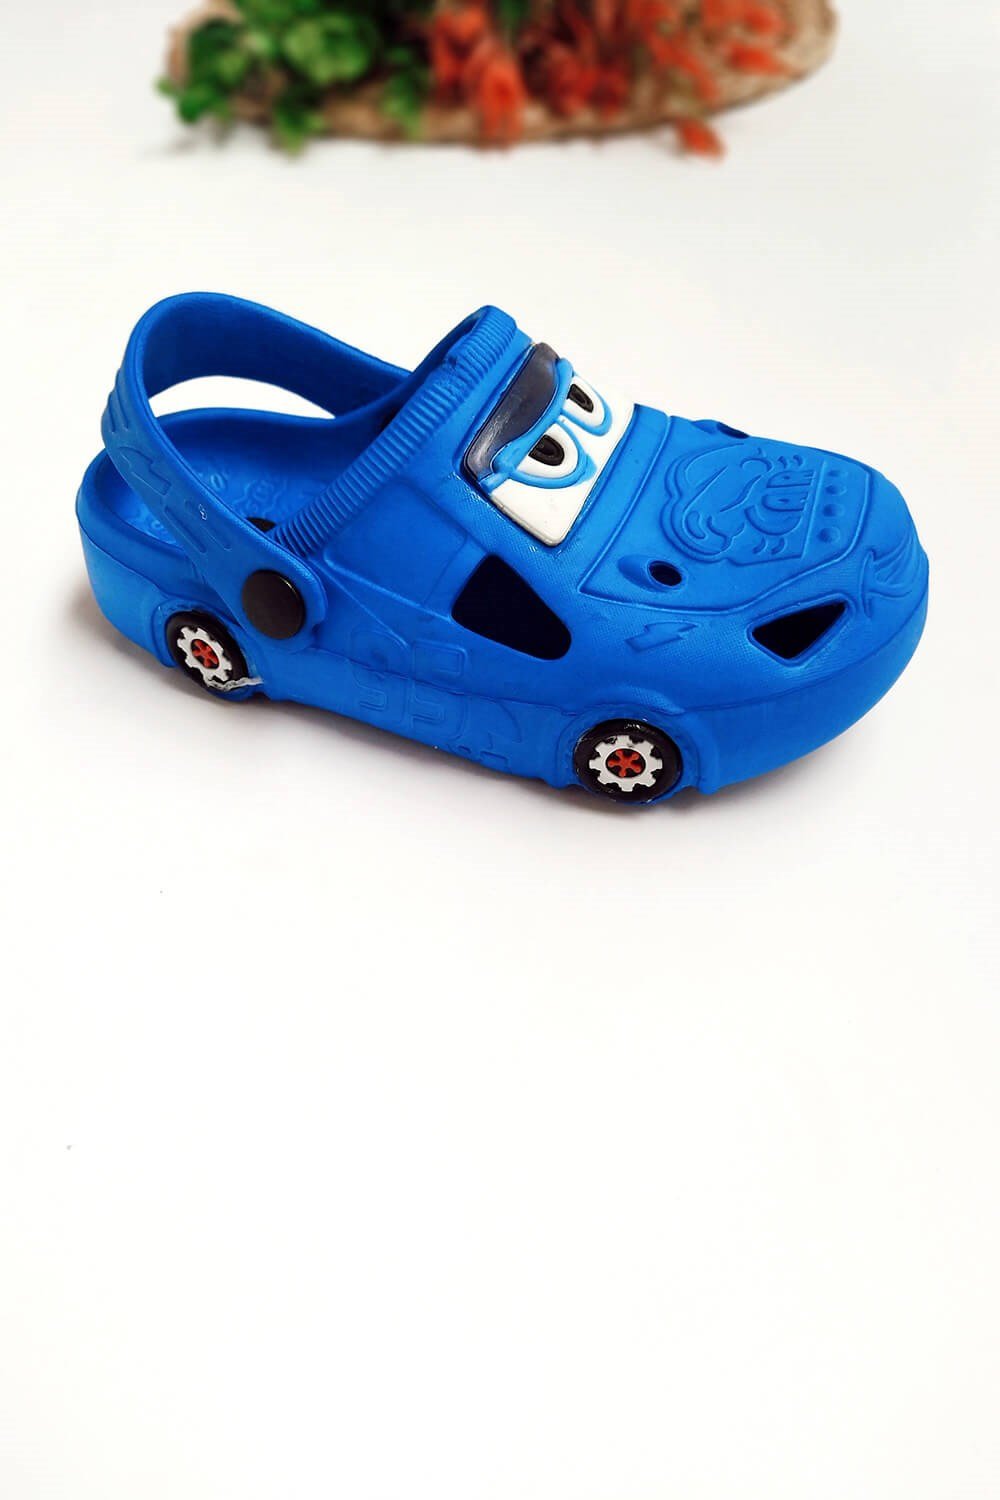 Arabalı Çocuk Crocs Terlik Mavi - Minilipy.com